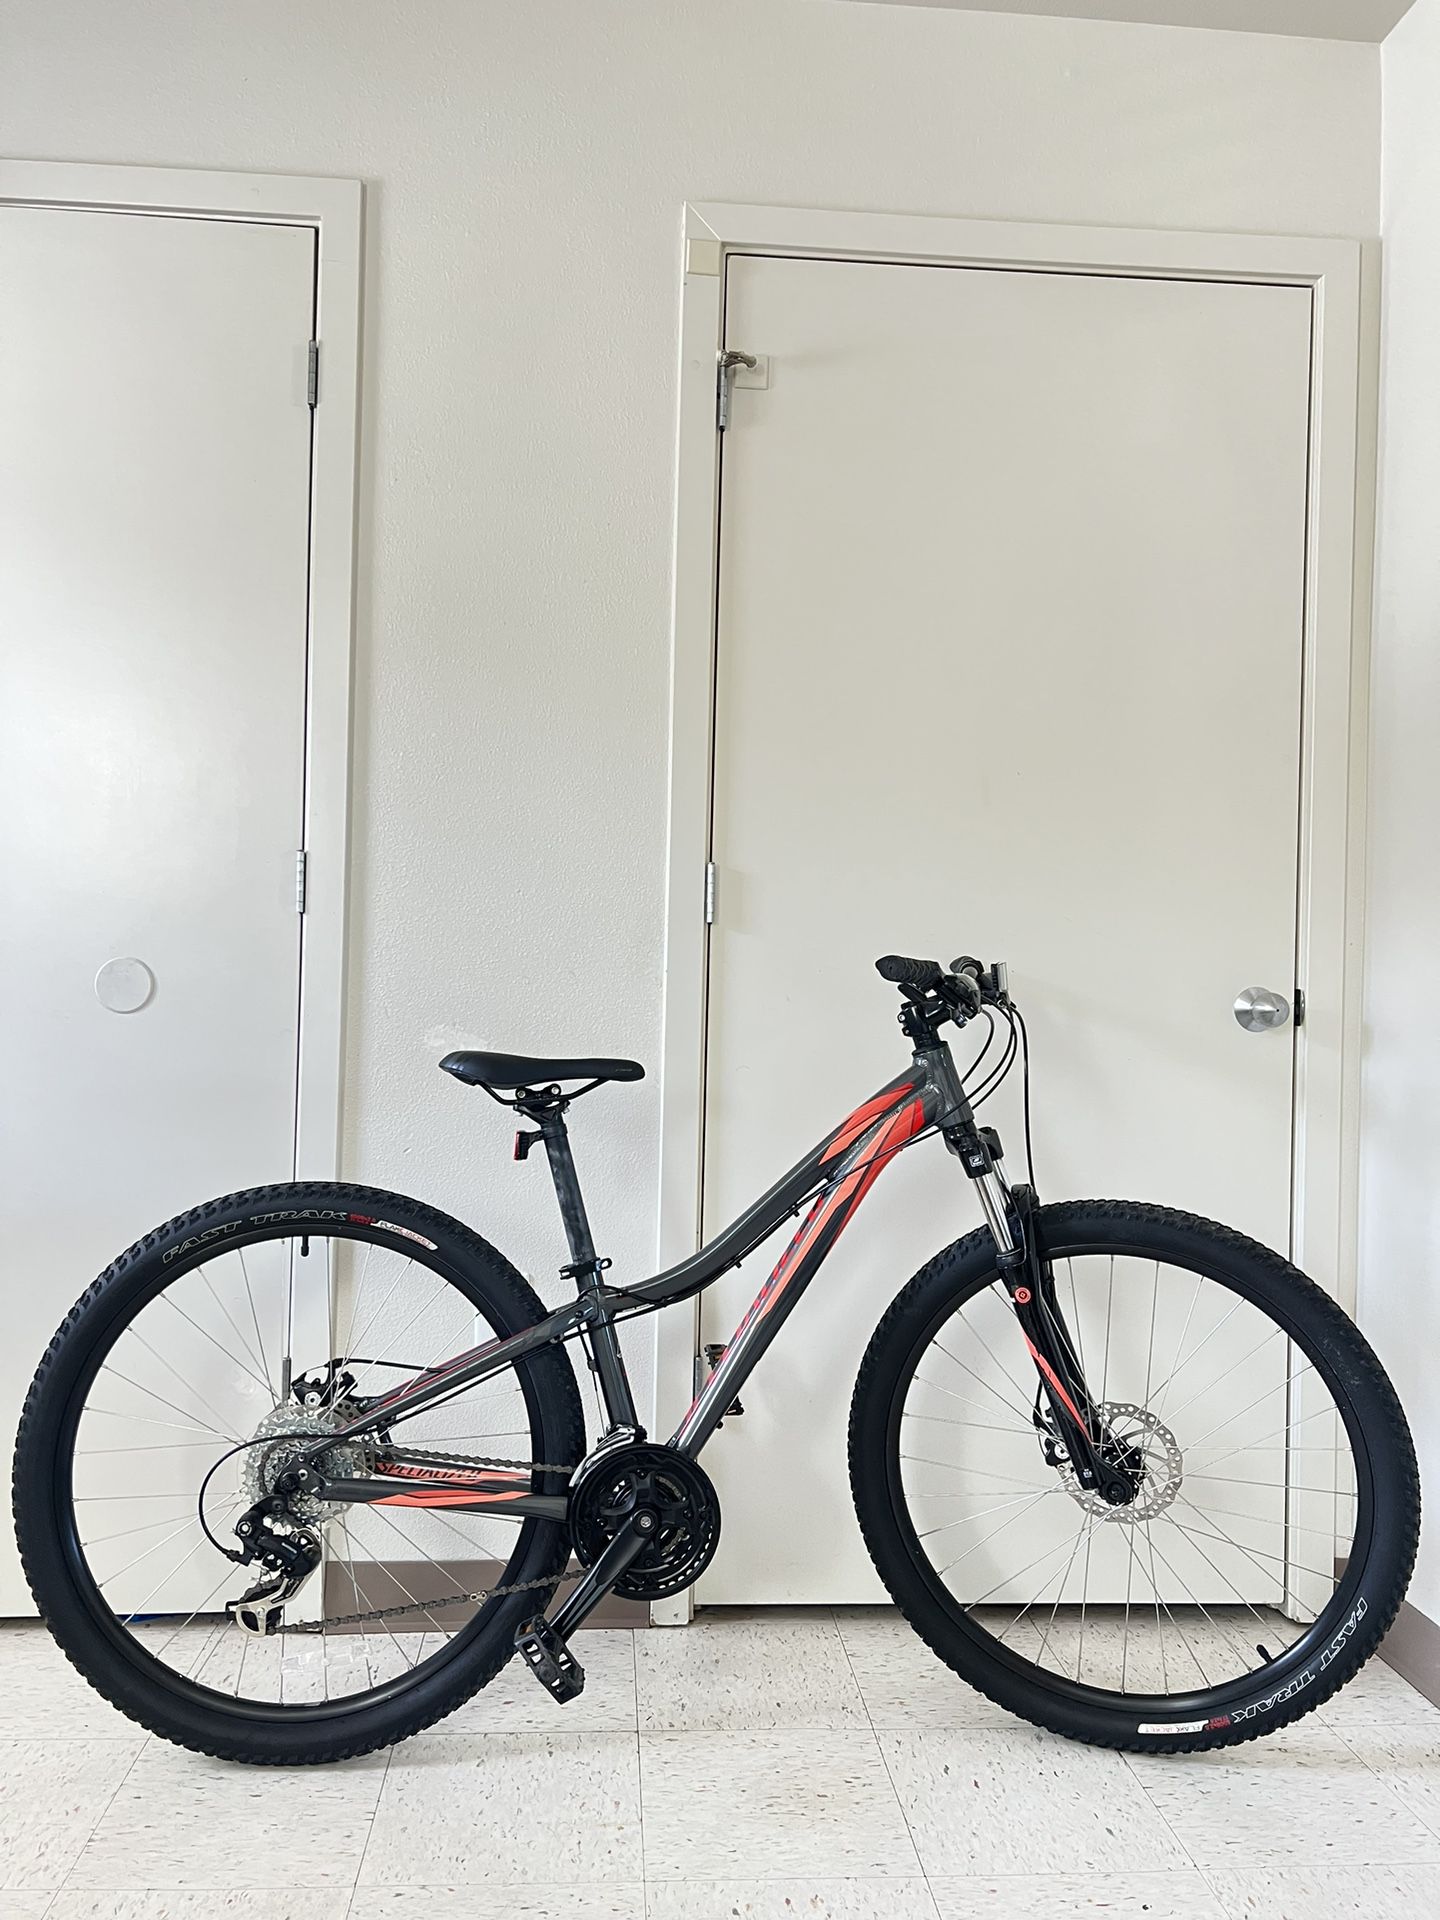 Specialized Myka Mountain Bike 27.5”